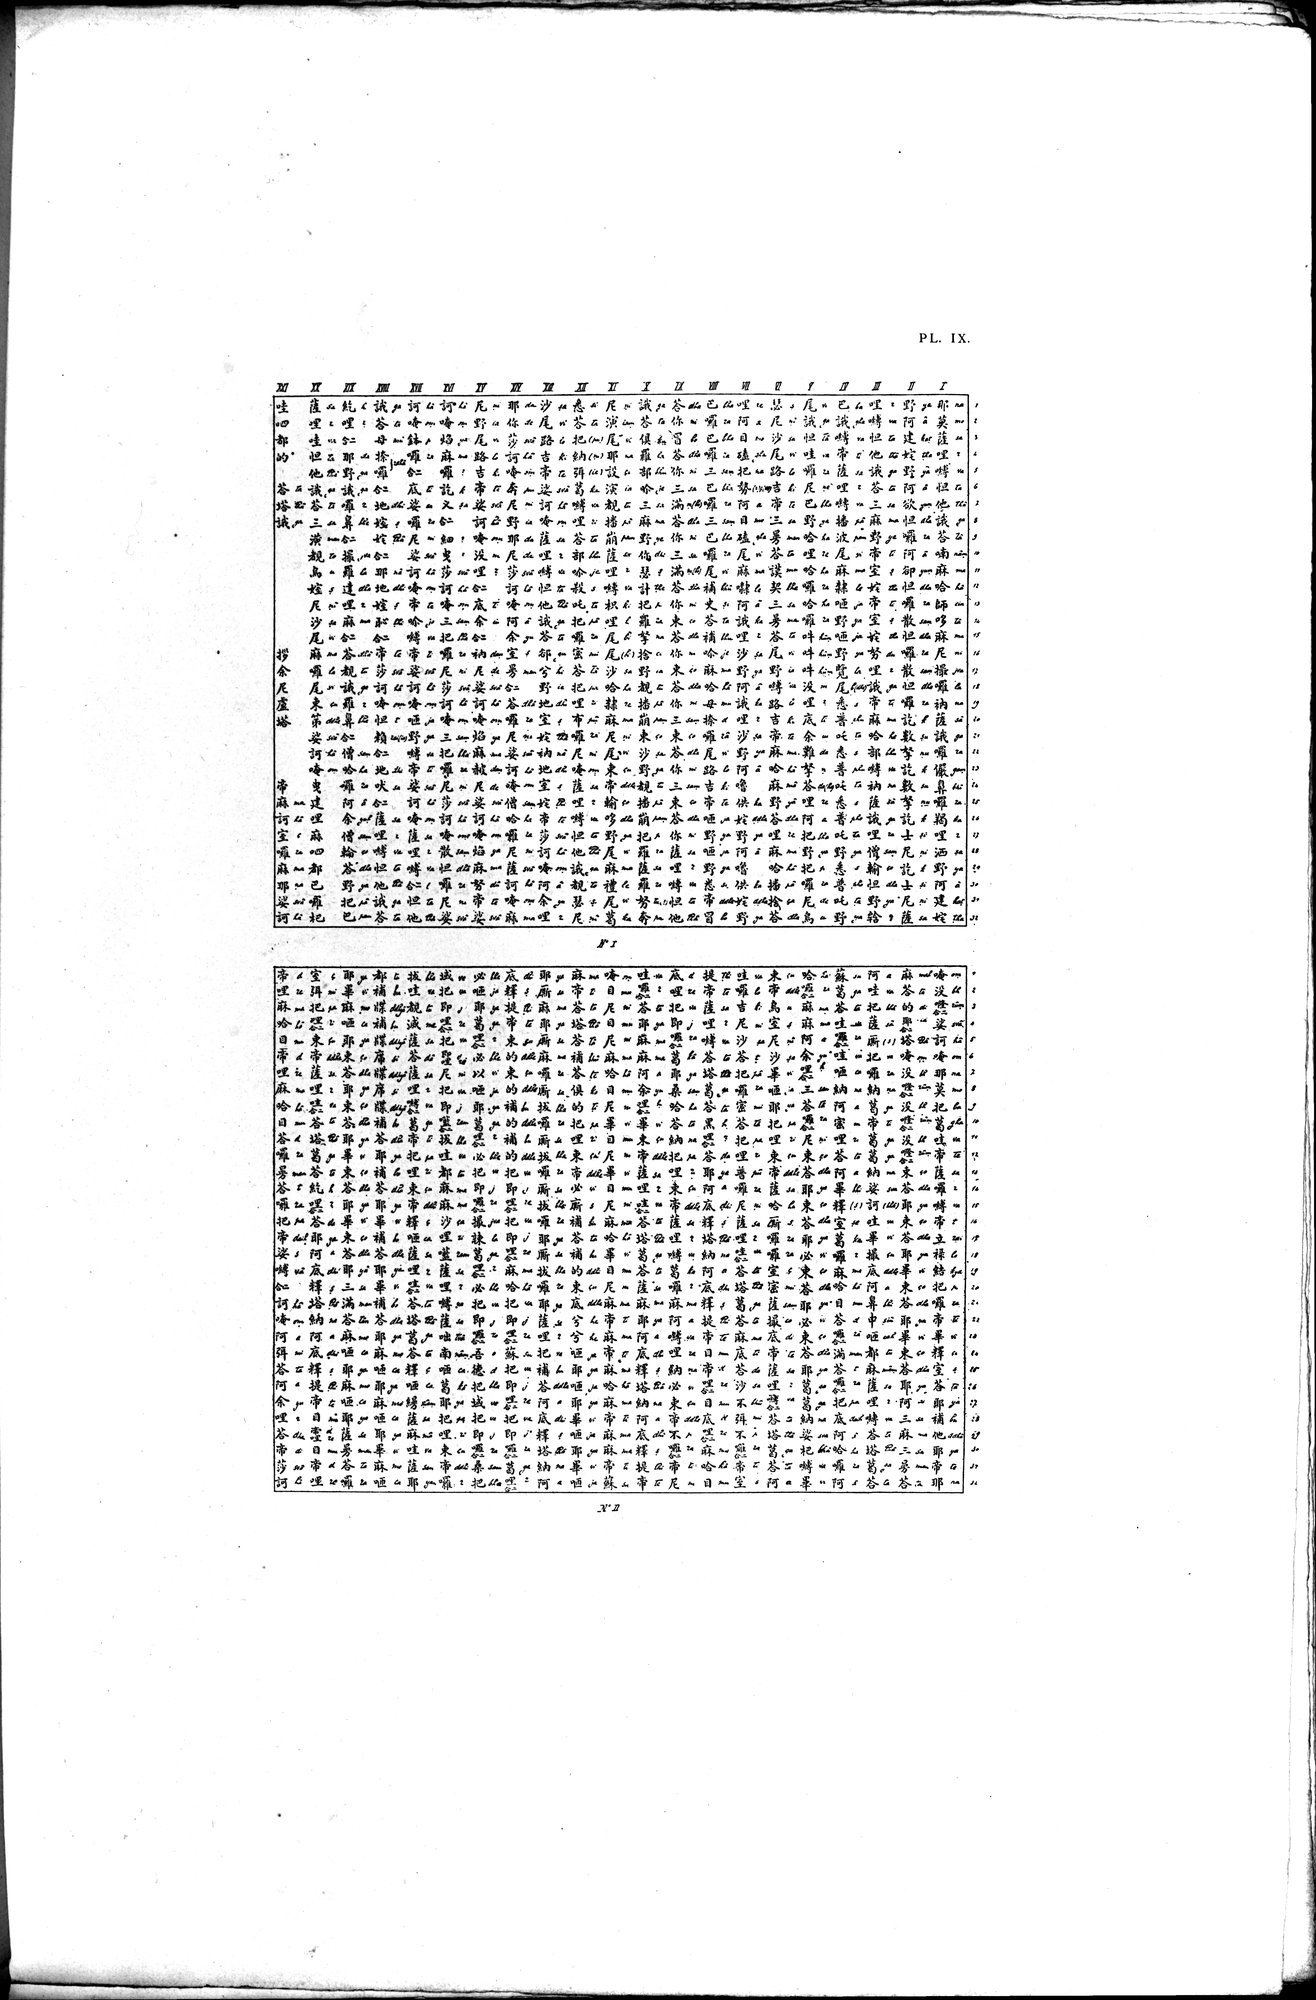 Documente de l'Époque Mongole des XIIIe et XIVe Siècle : vol.1 / 35 ページ（白黒高解像度画像）